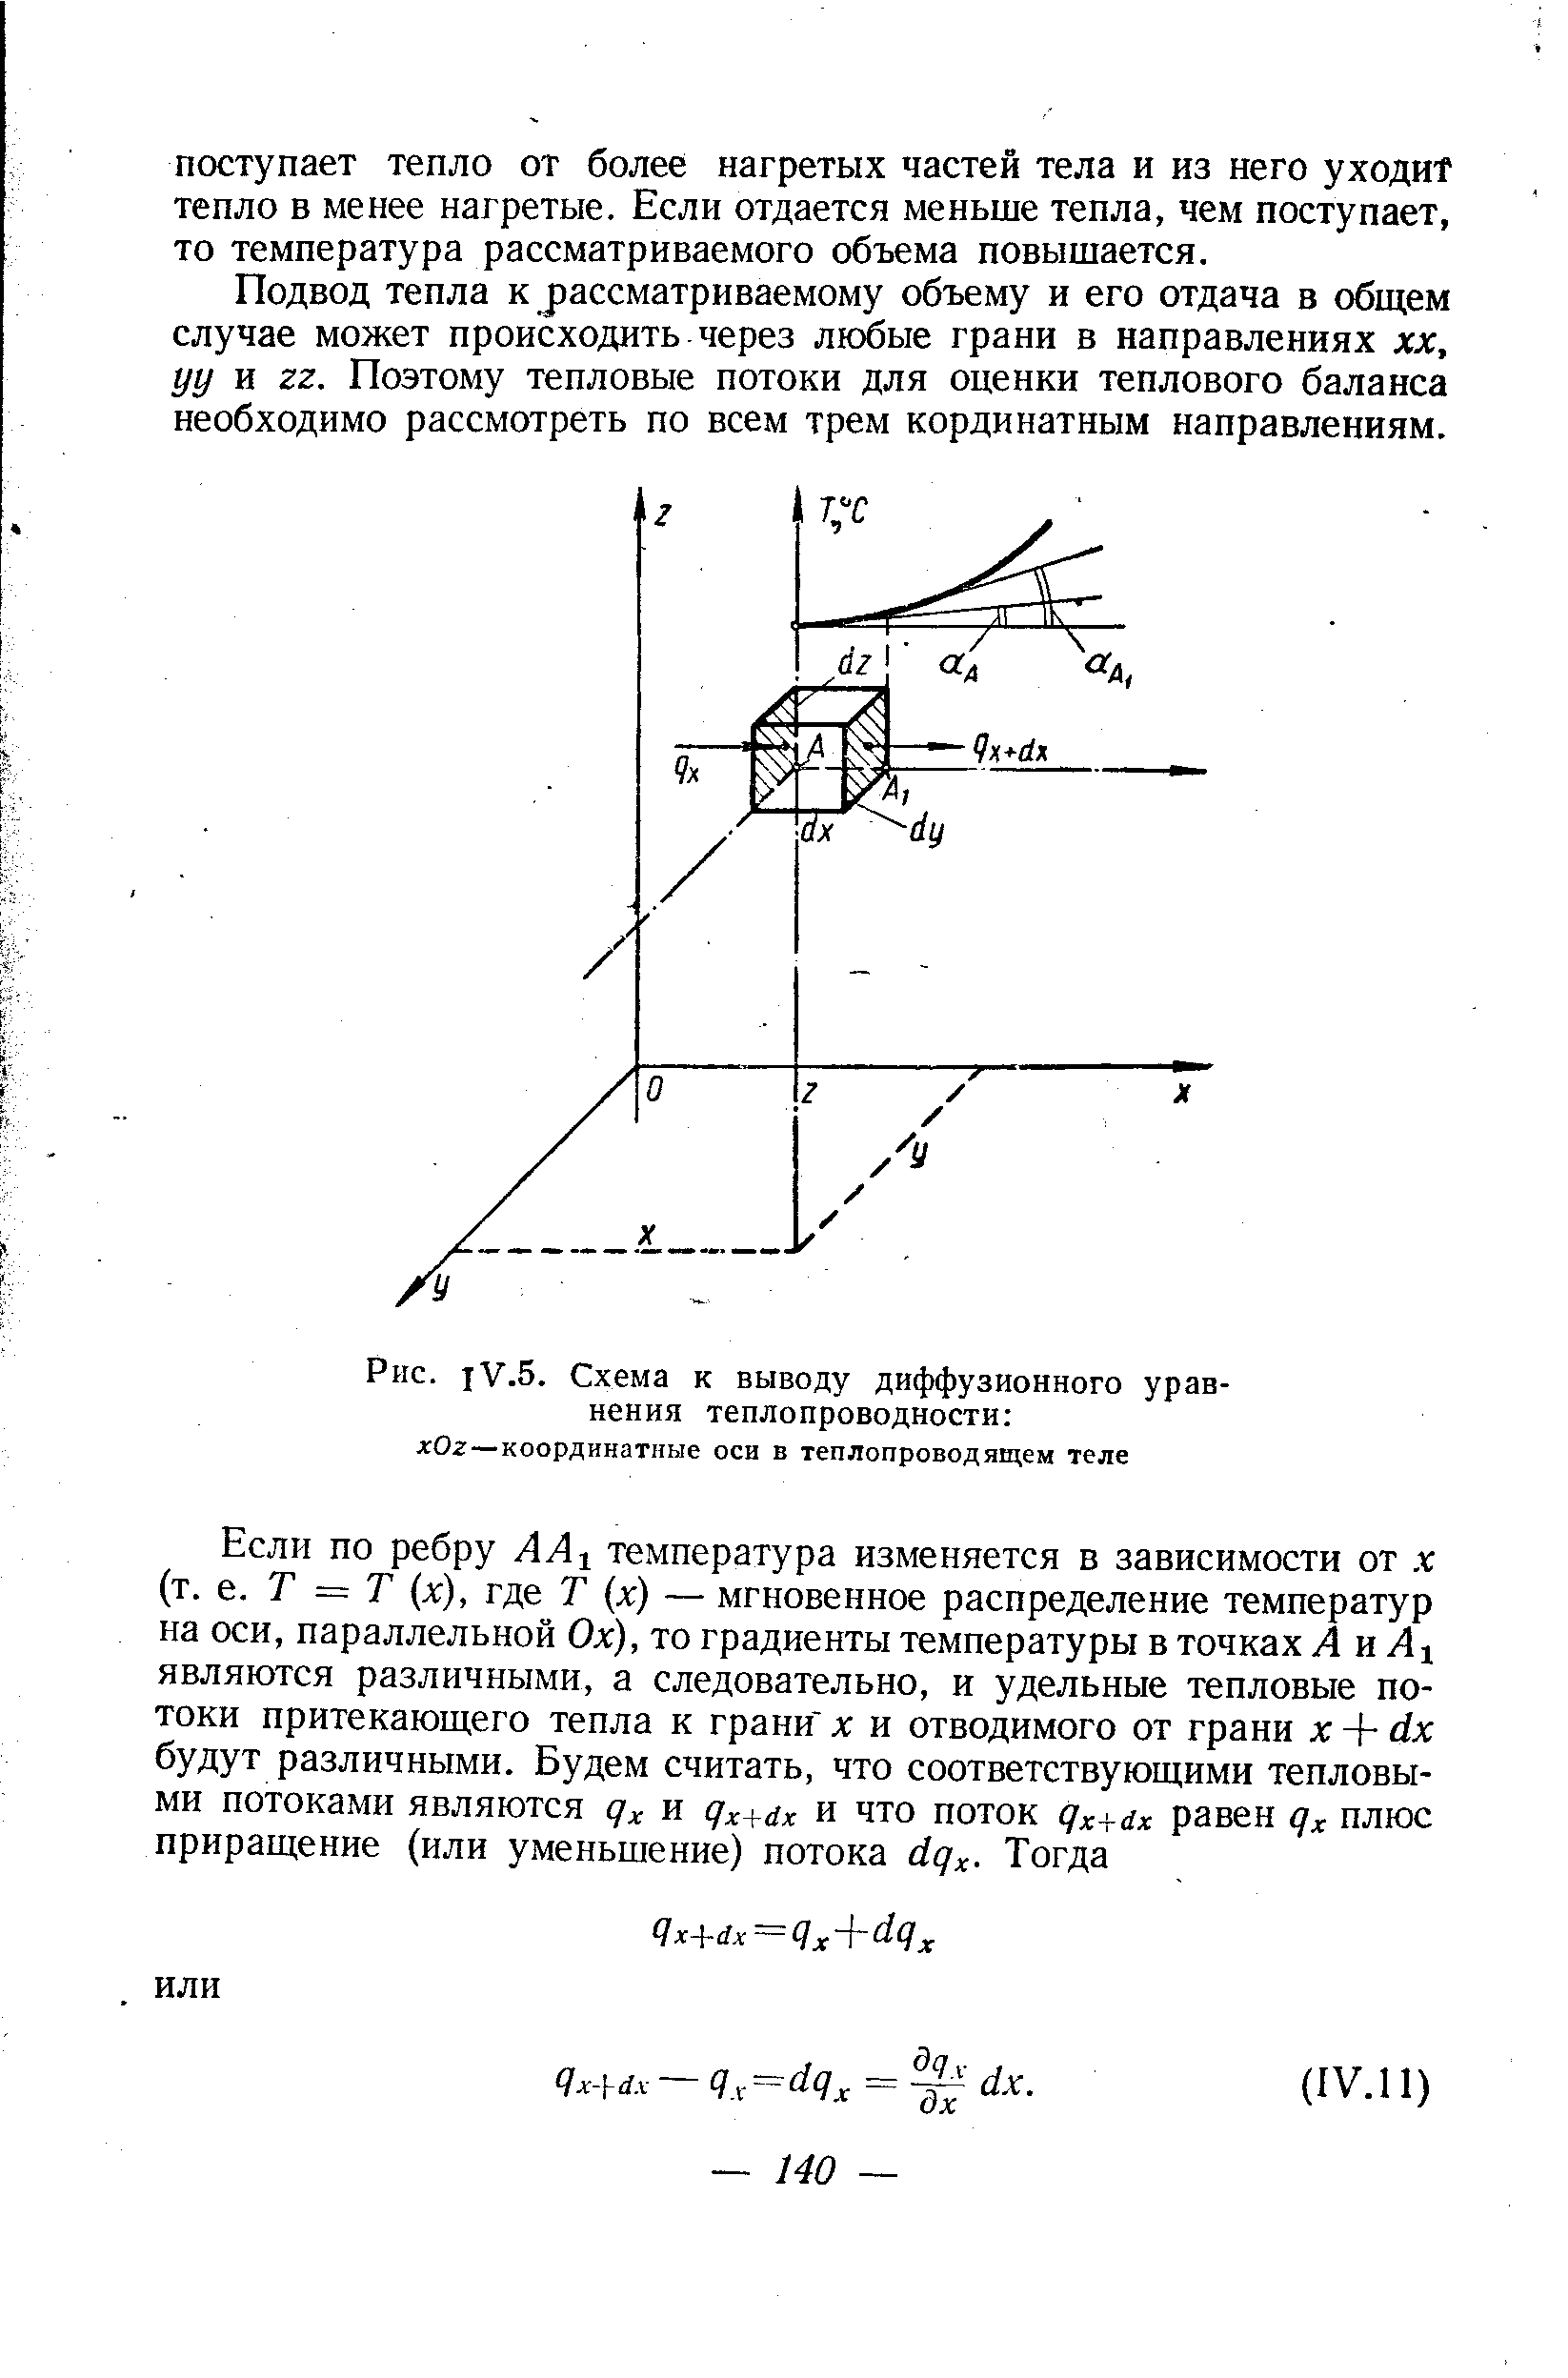 Рис. 1У.5. Схема к выводу диффузионного уравнения теплопроводности д Ог—координатные оси в теплопроводящем теле
